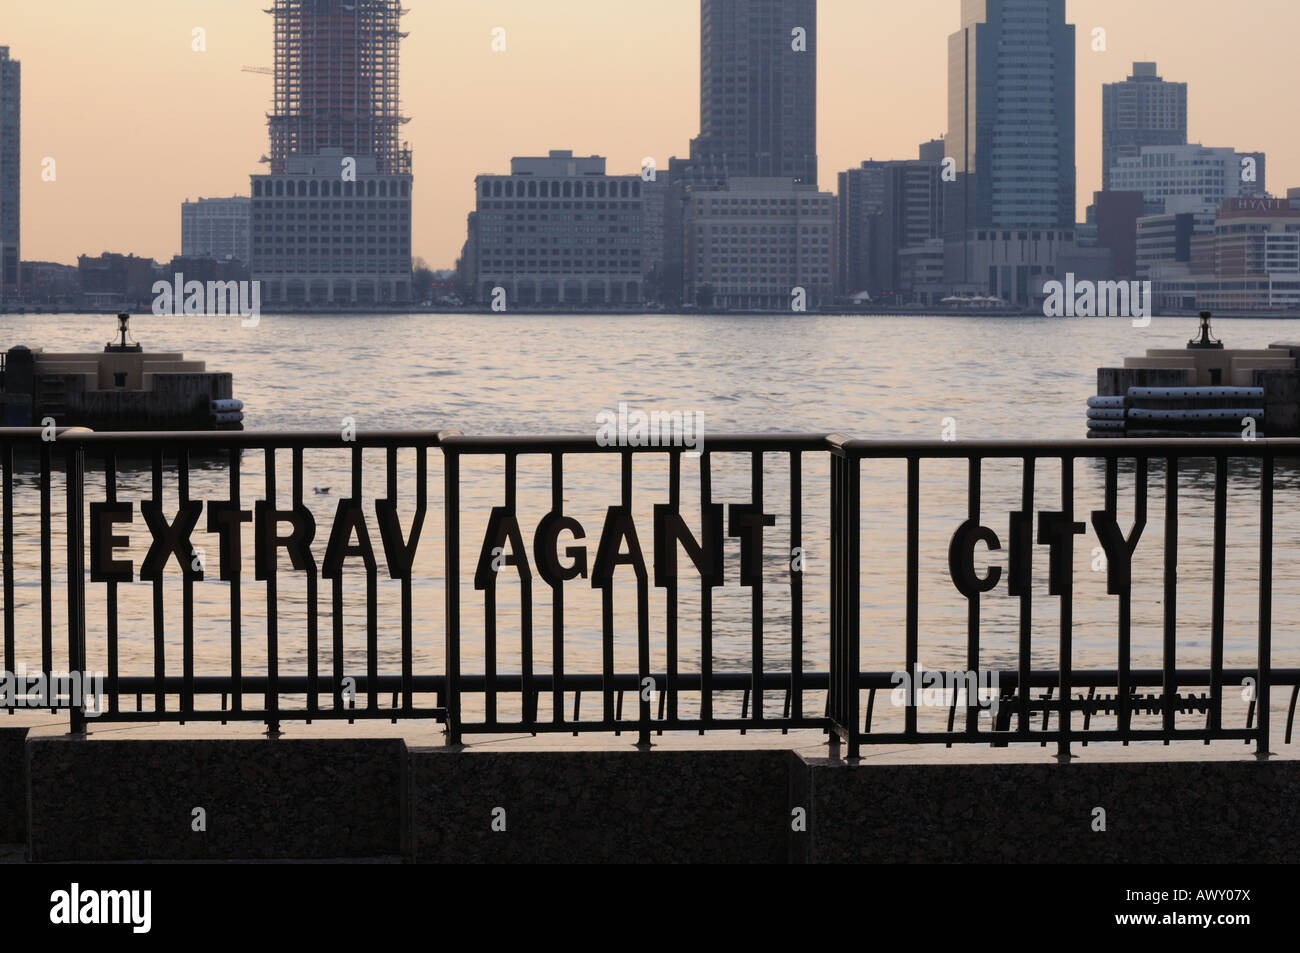 Une balustrade dans Battery Park City intègre des lignes d'un poème de Walt Whitman décrivant l'énergie de la ville de New York et d'exubérance. Banque D'Images